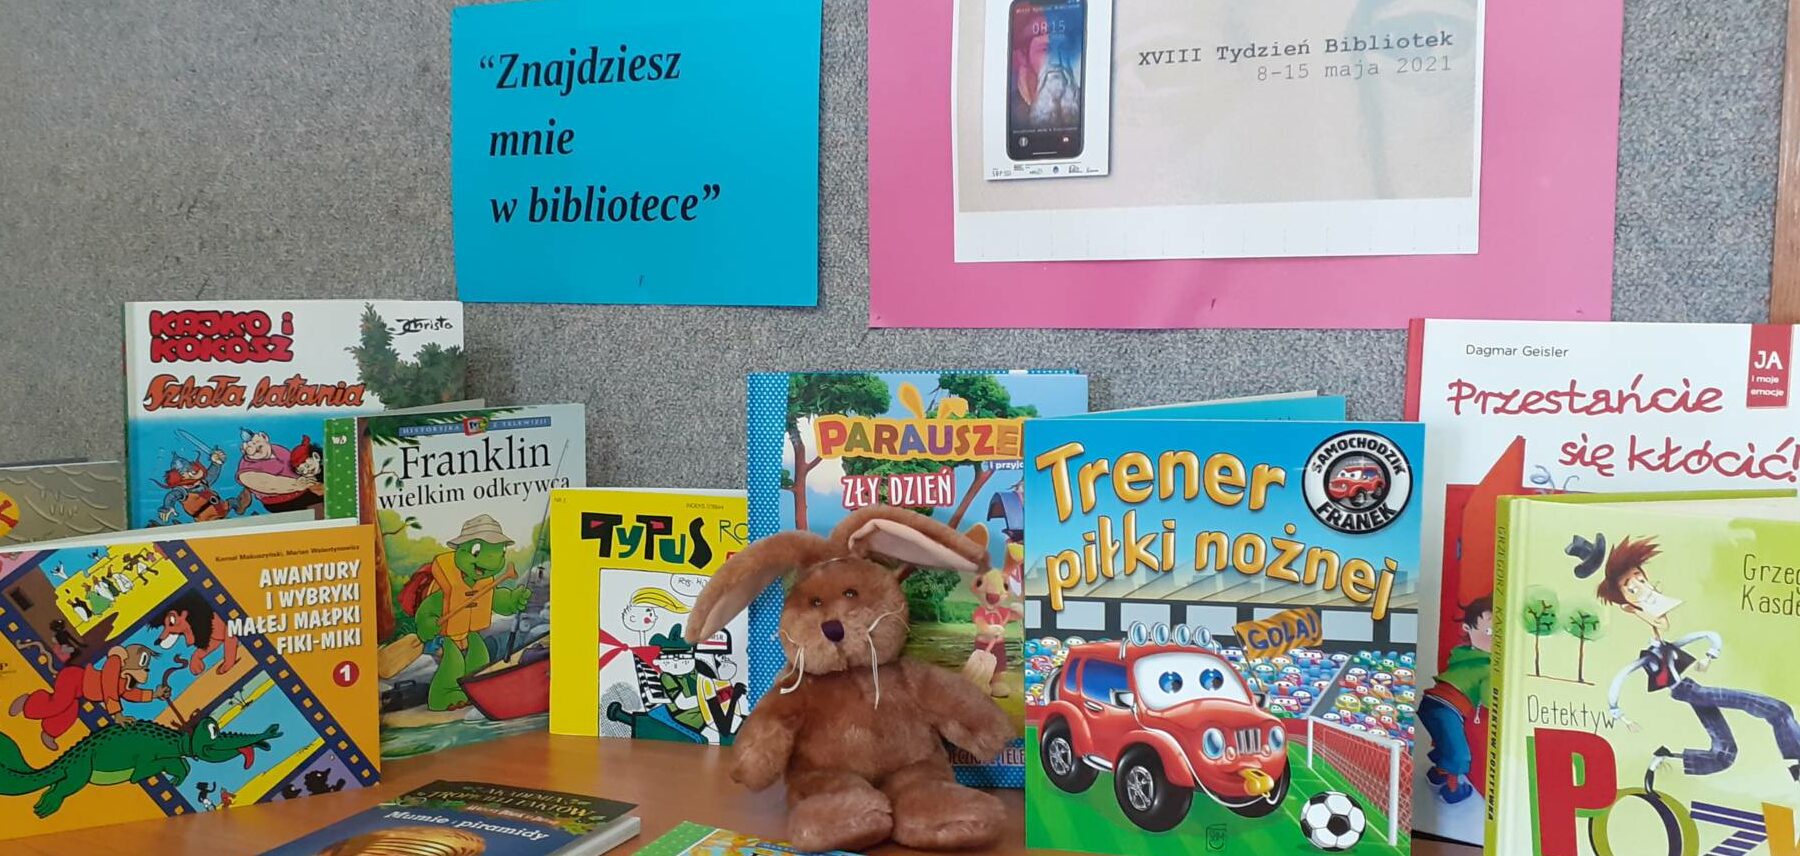 You are currently viewing XVIII Tydzień Bibliotek -„Znajdziesz mnie w bibliotece” –  Wystawka książek